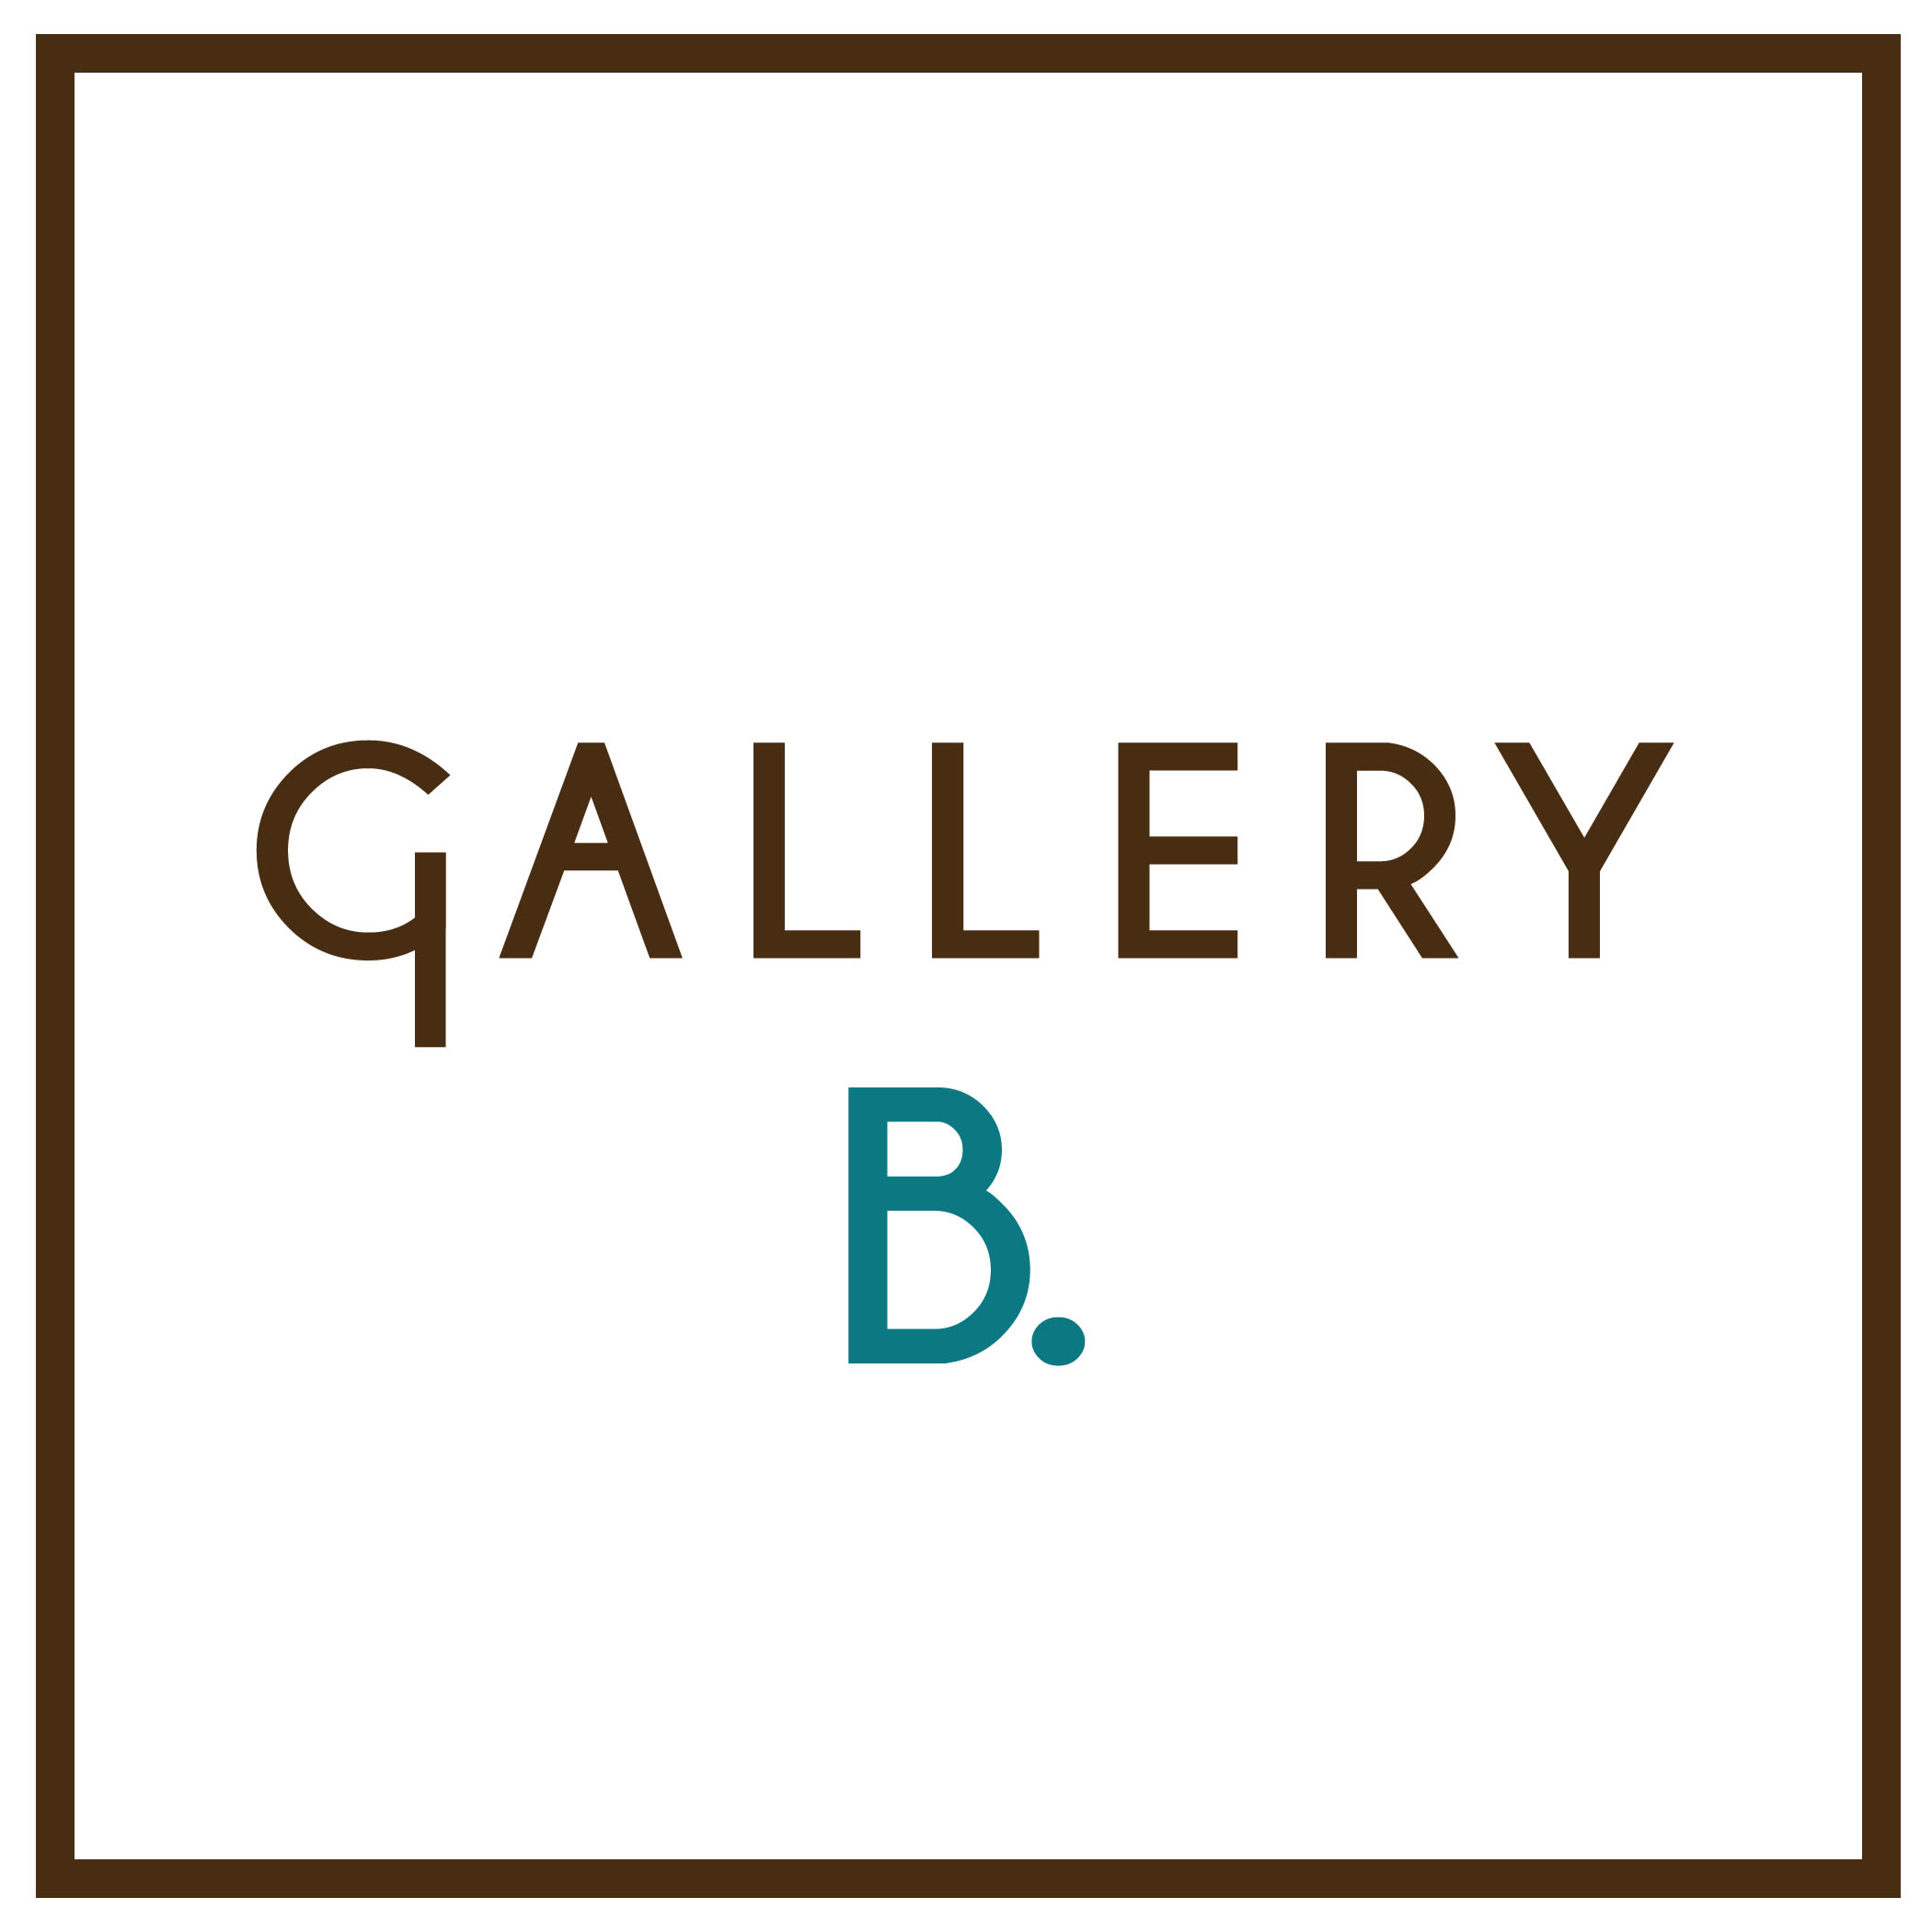 gallery b. company logo